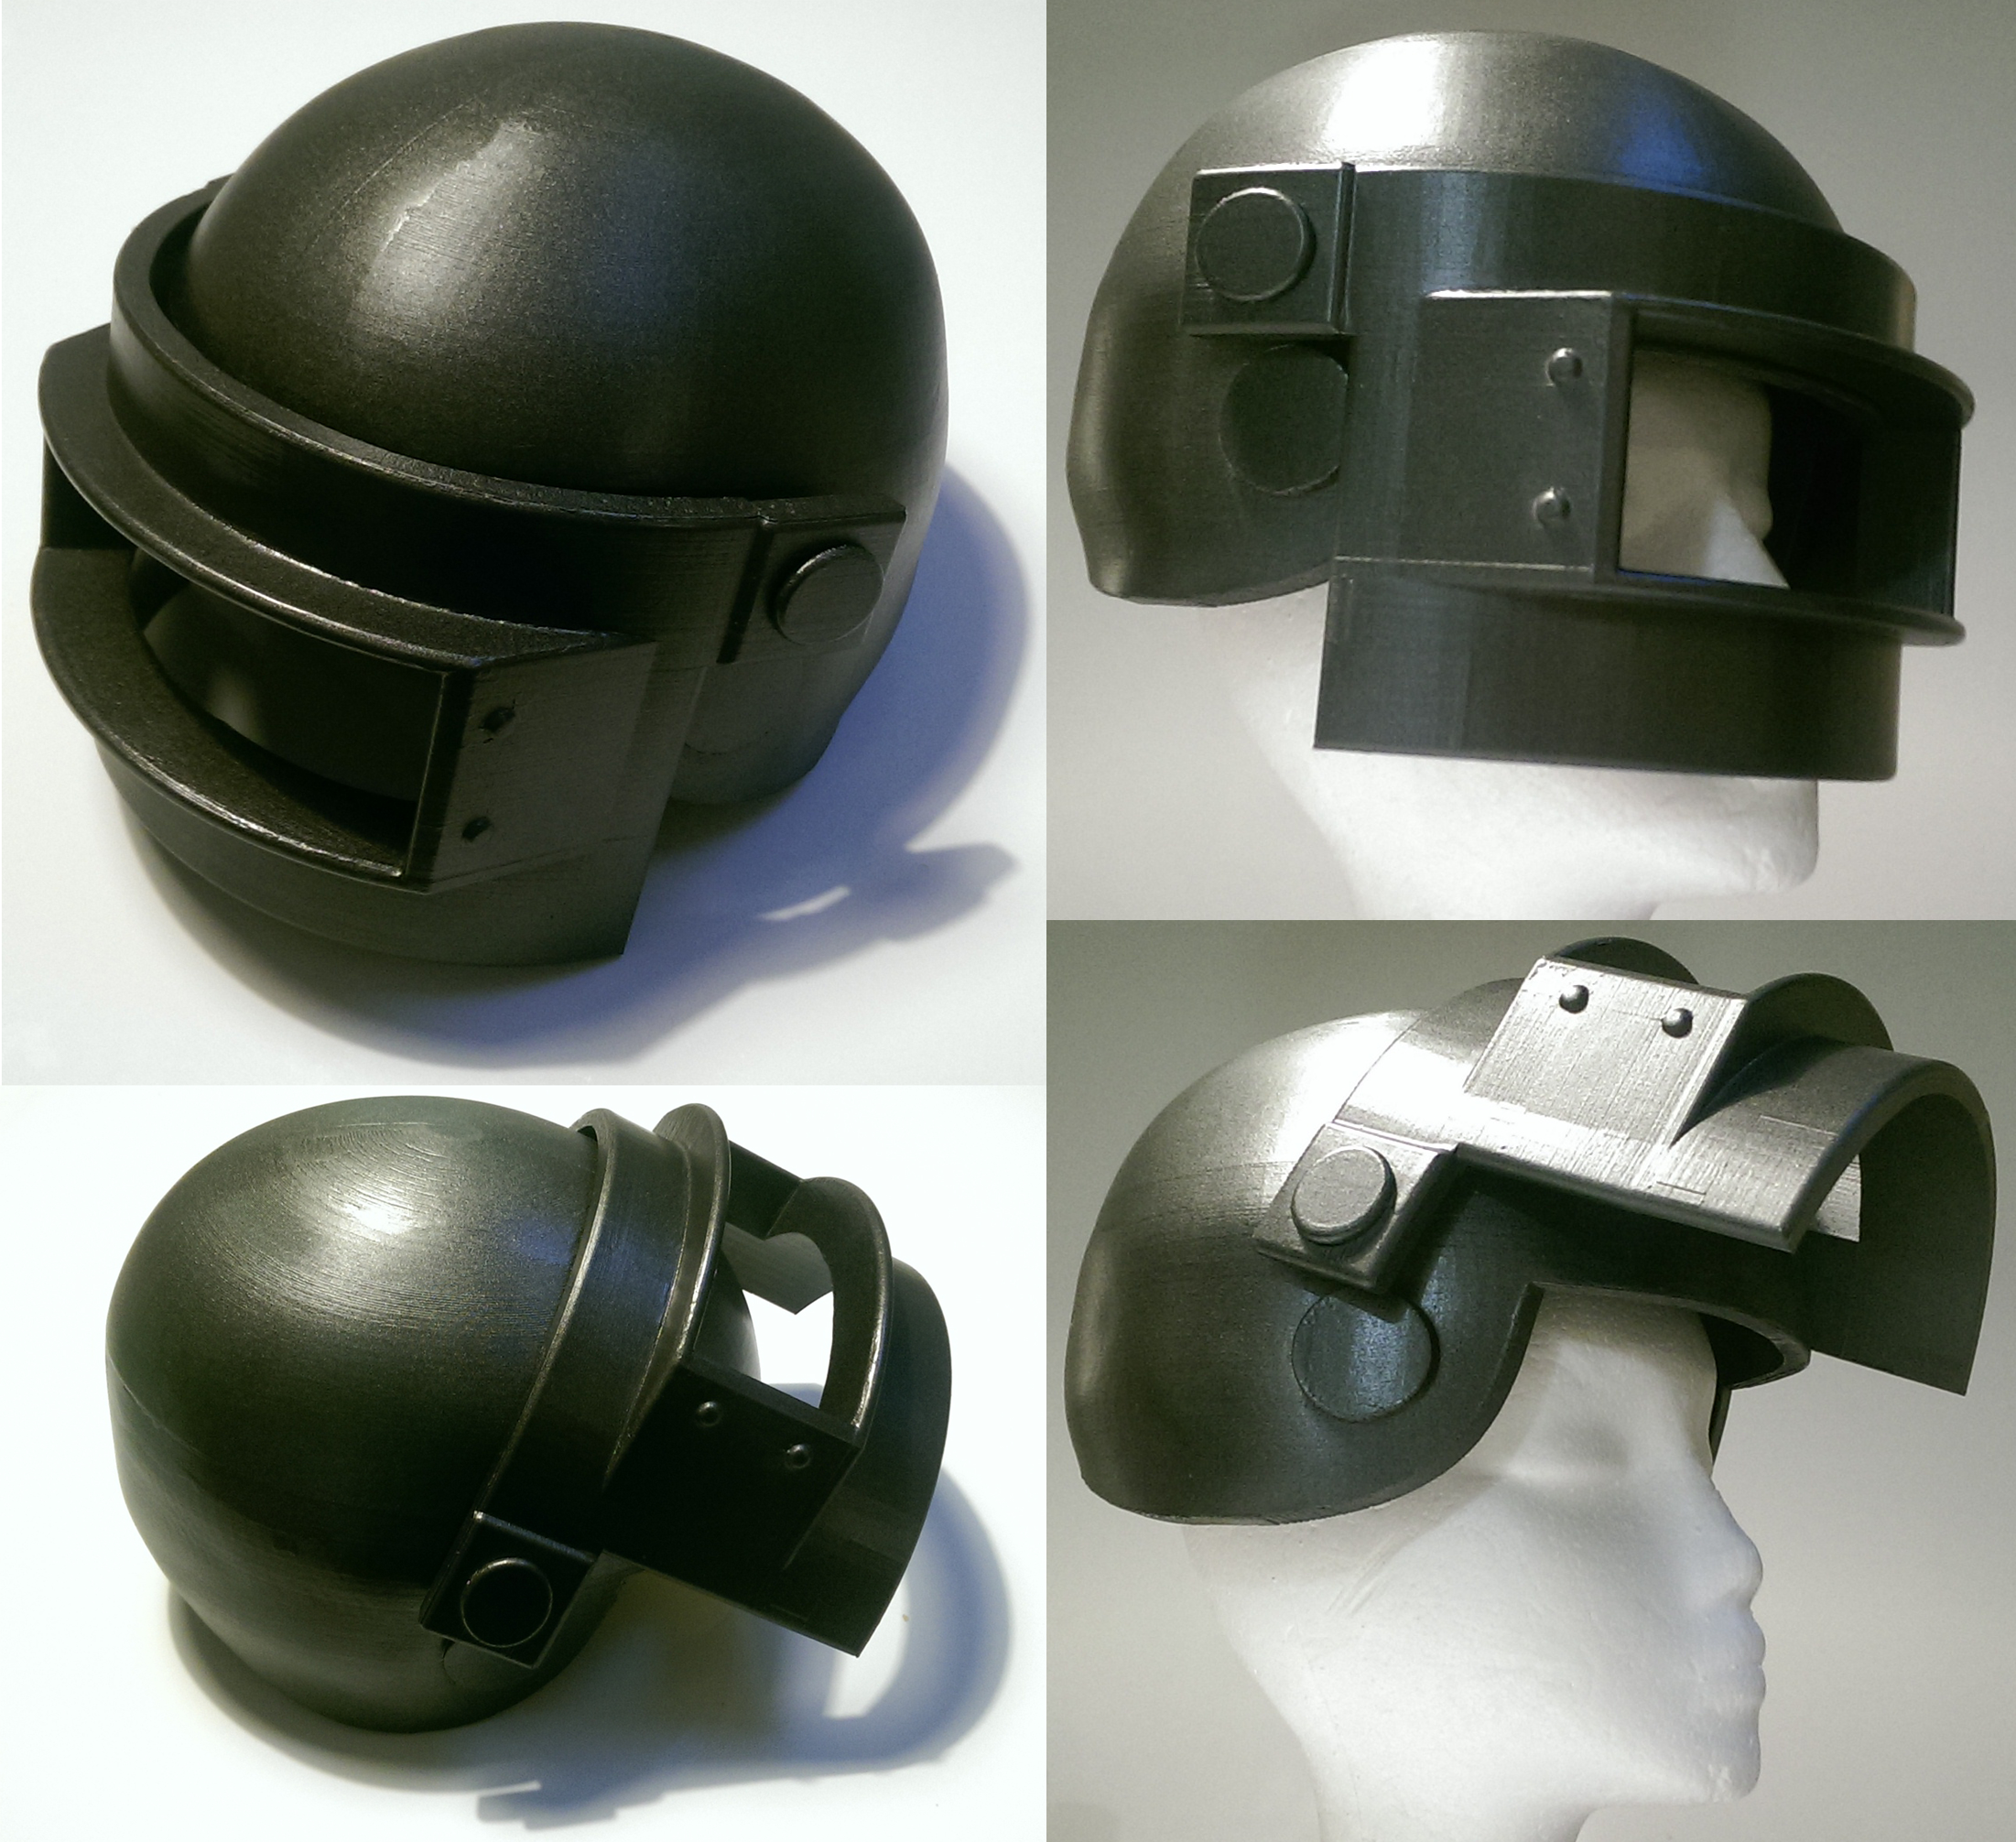 Made the Level 3 helmet : r/PUBATTLEGROUNDS